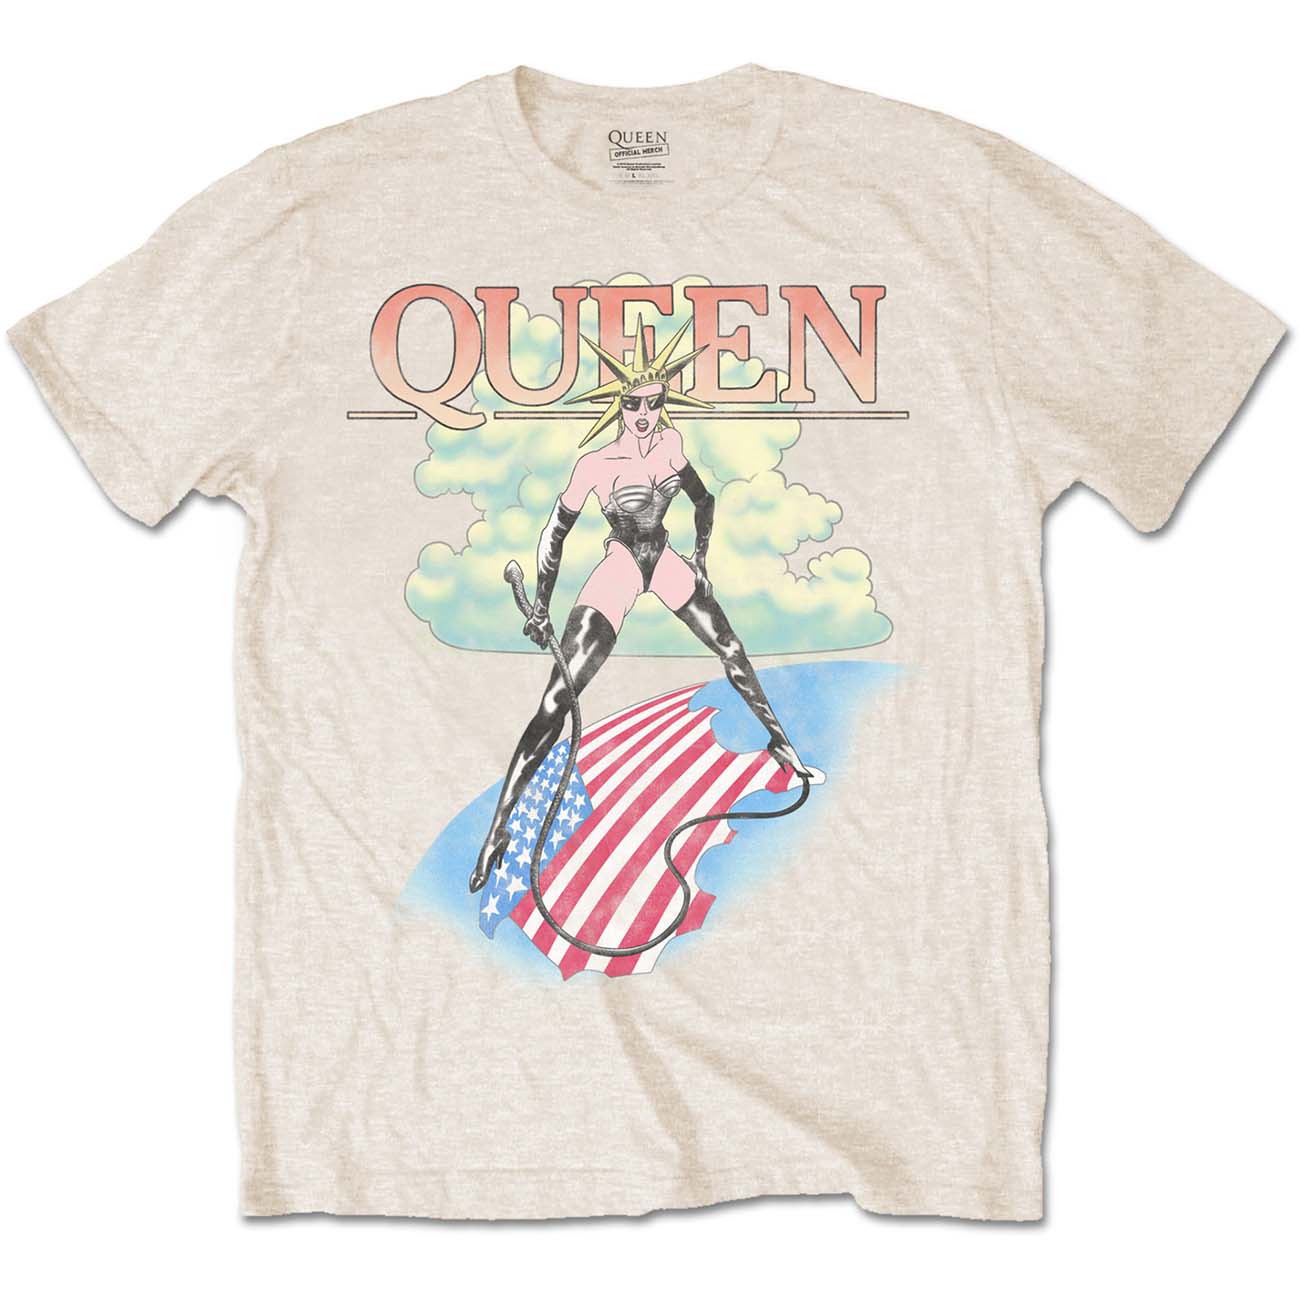 Queen Unisex T-Shirt: Mistress